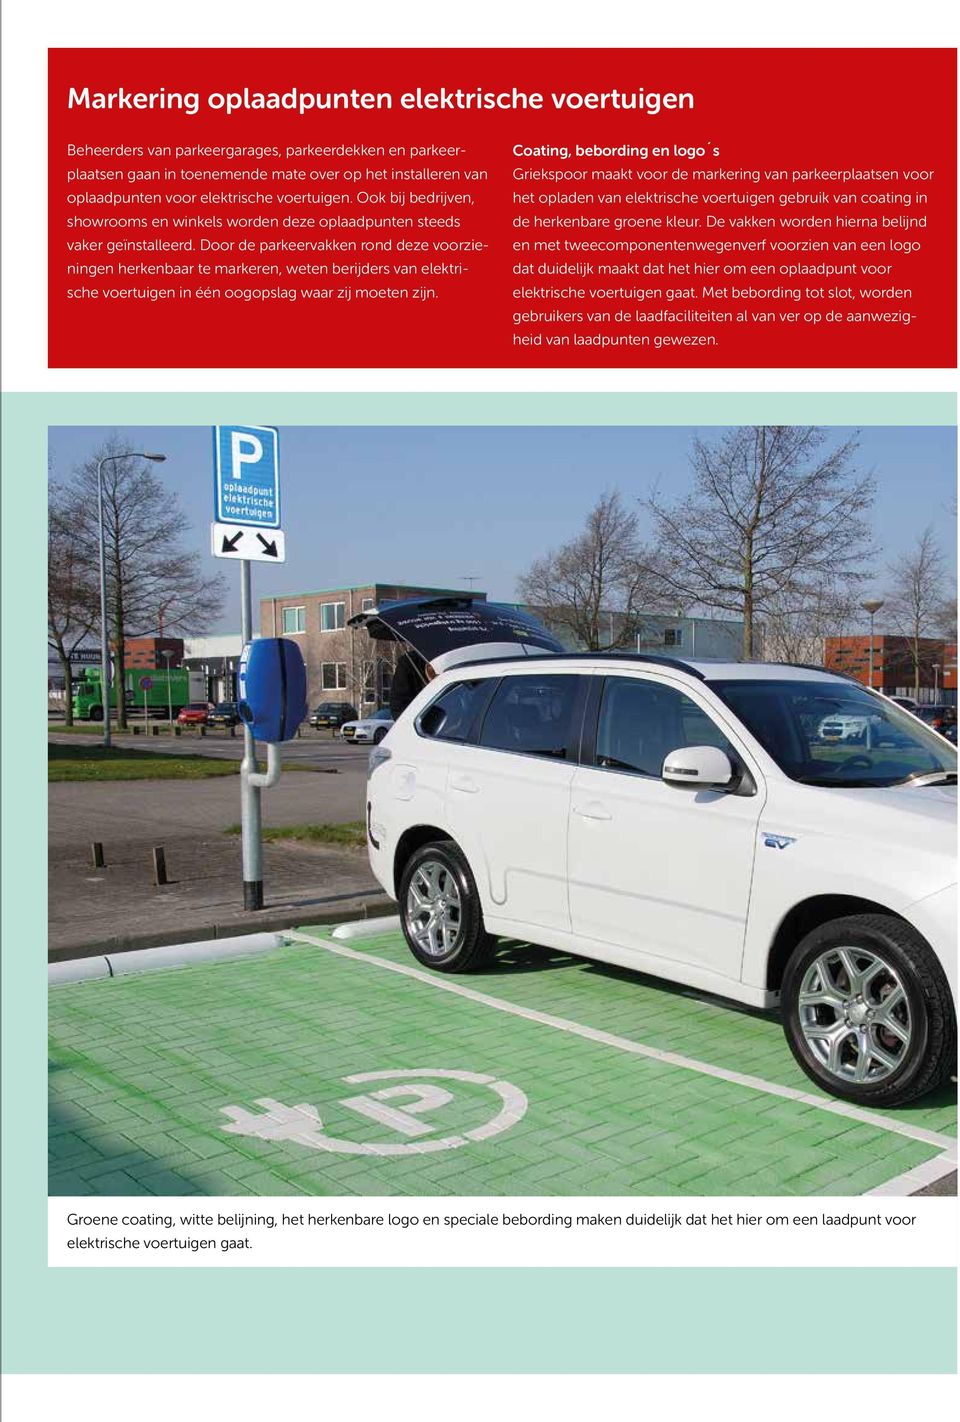 Door de parkeervakken rond deze voorzieningen herkenbaar te markeren, weten berijders van elektrische voertuigen in één oogopslag waar zij moeten zijn.